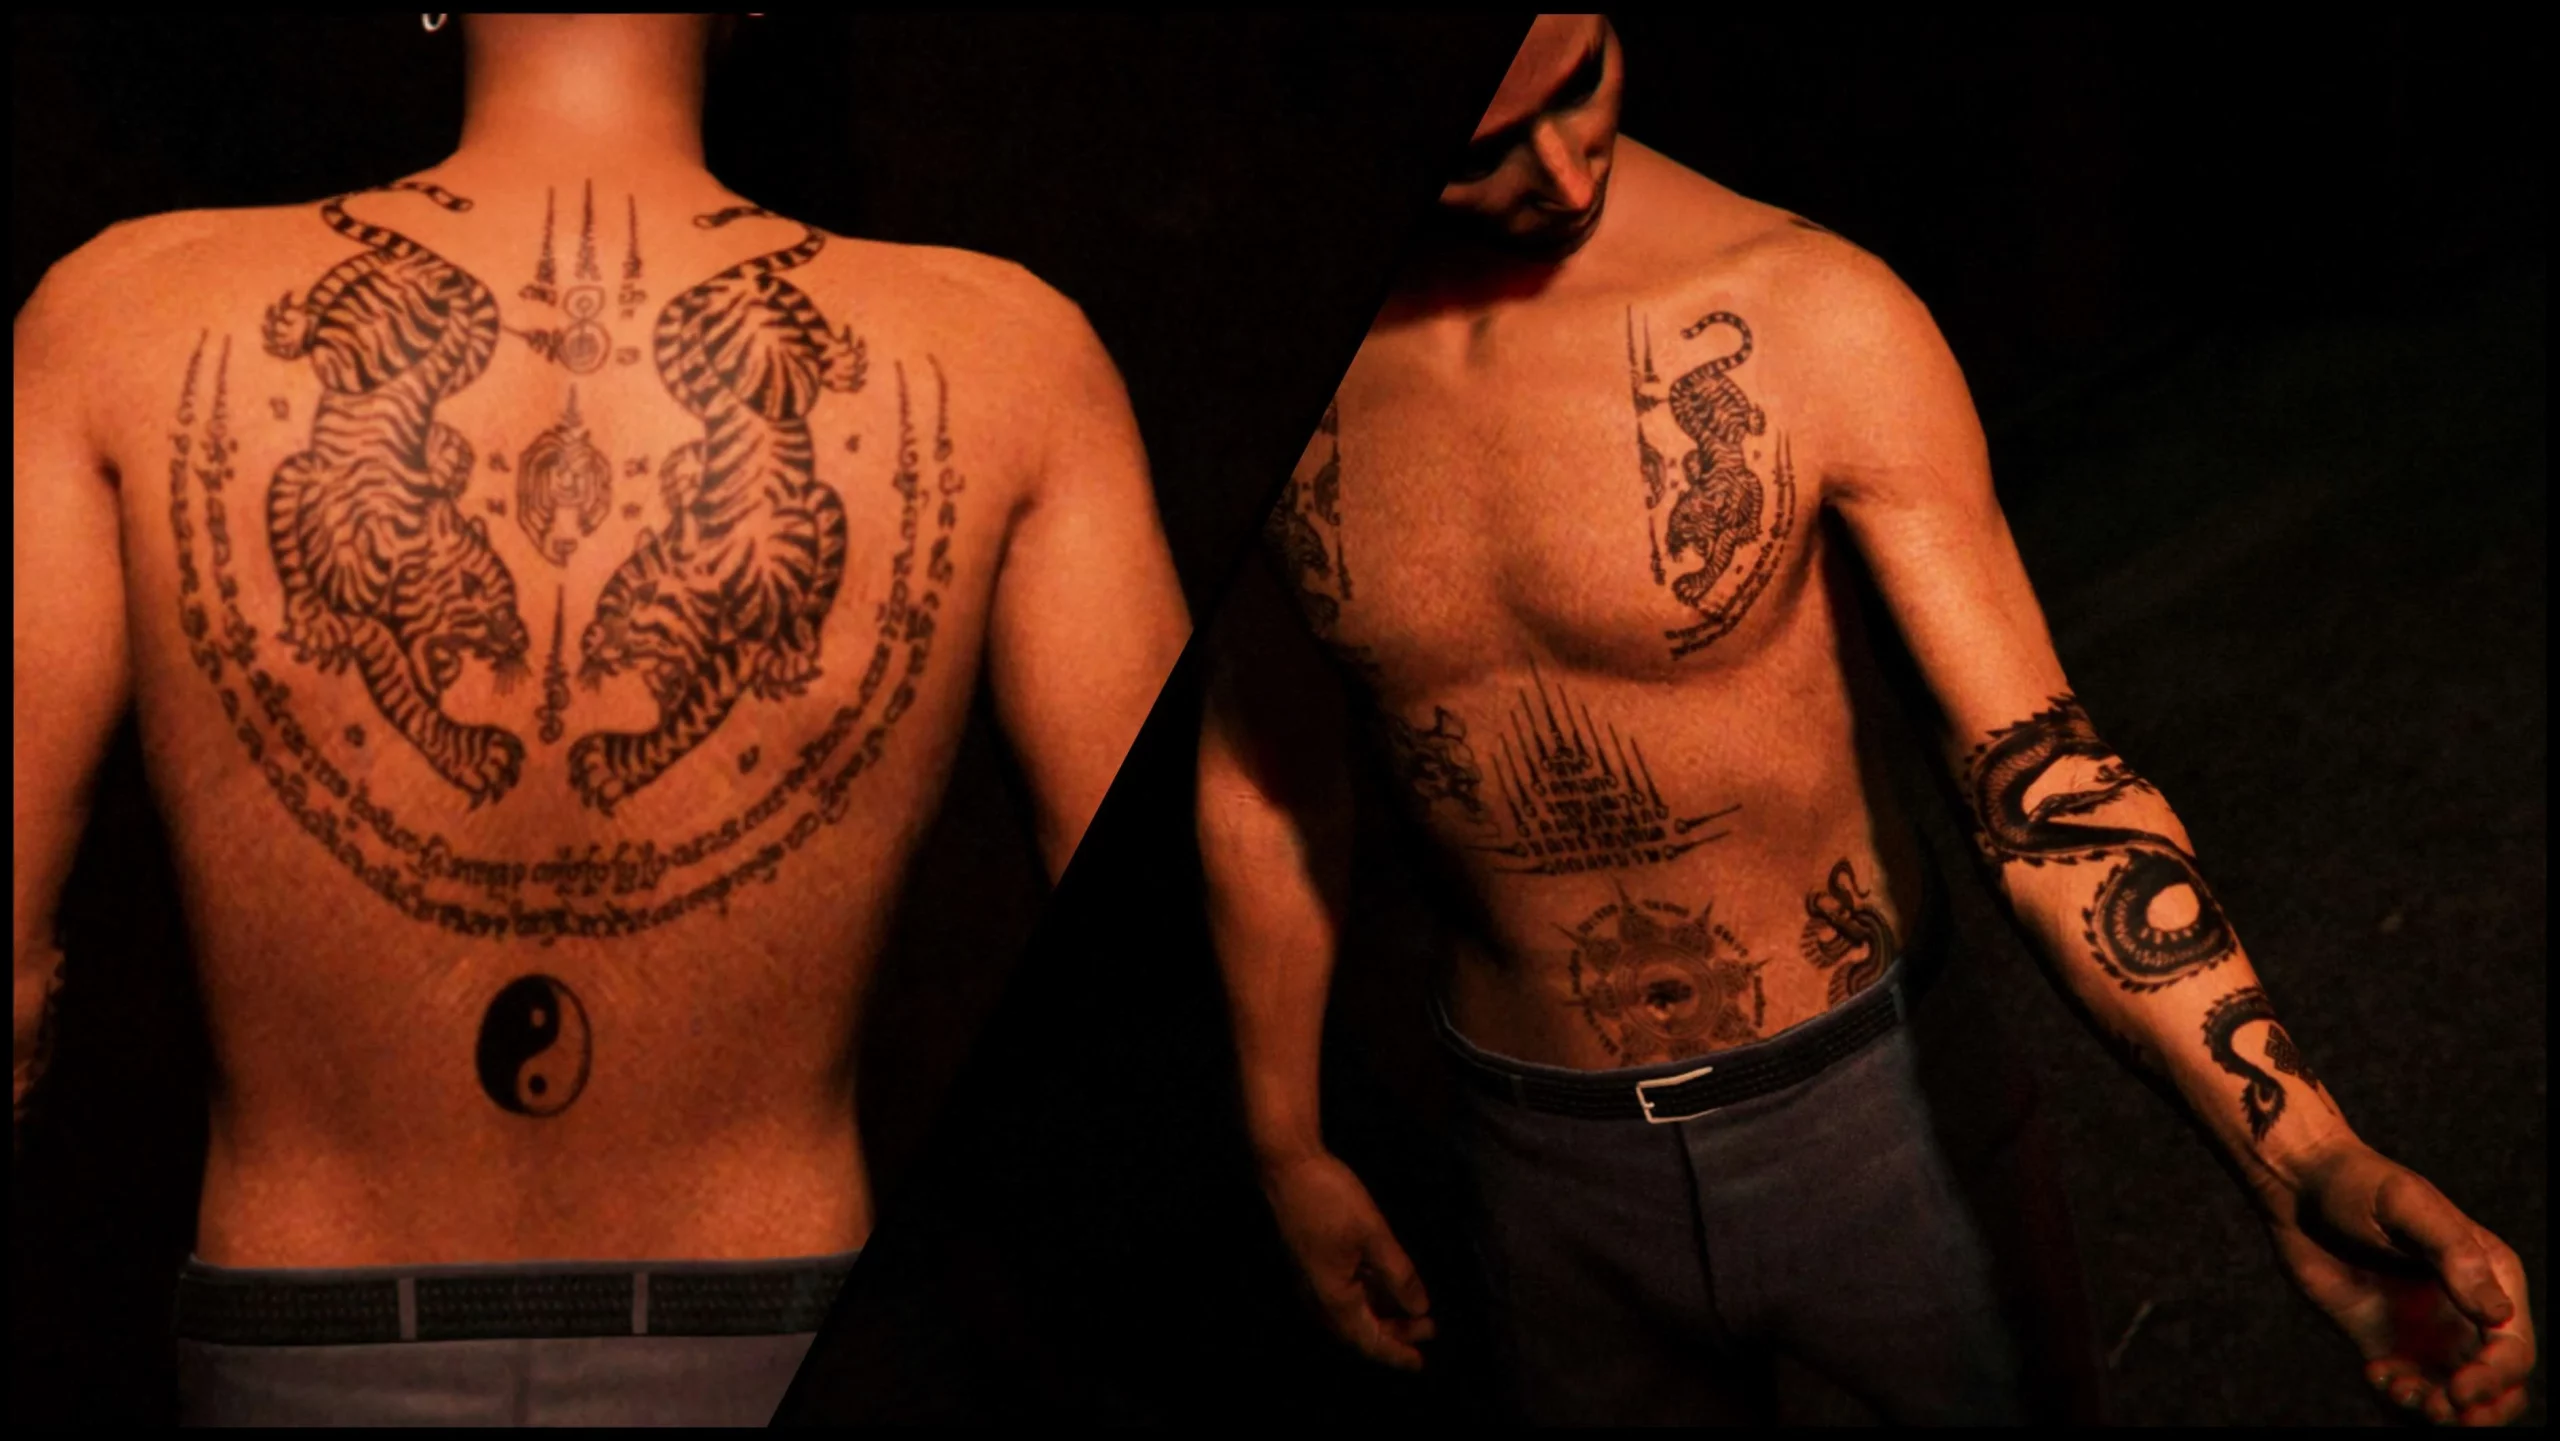 Tattoo uploaded by Ross Howerton  Wei Shen a la Sleeping Dogs  tattooedcharacters videogames  Tattoodo